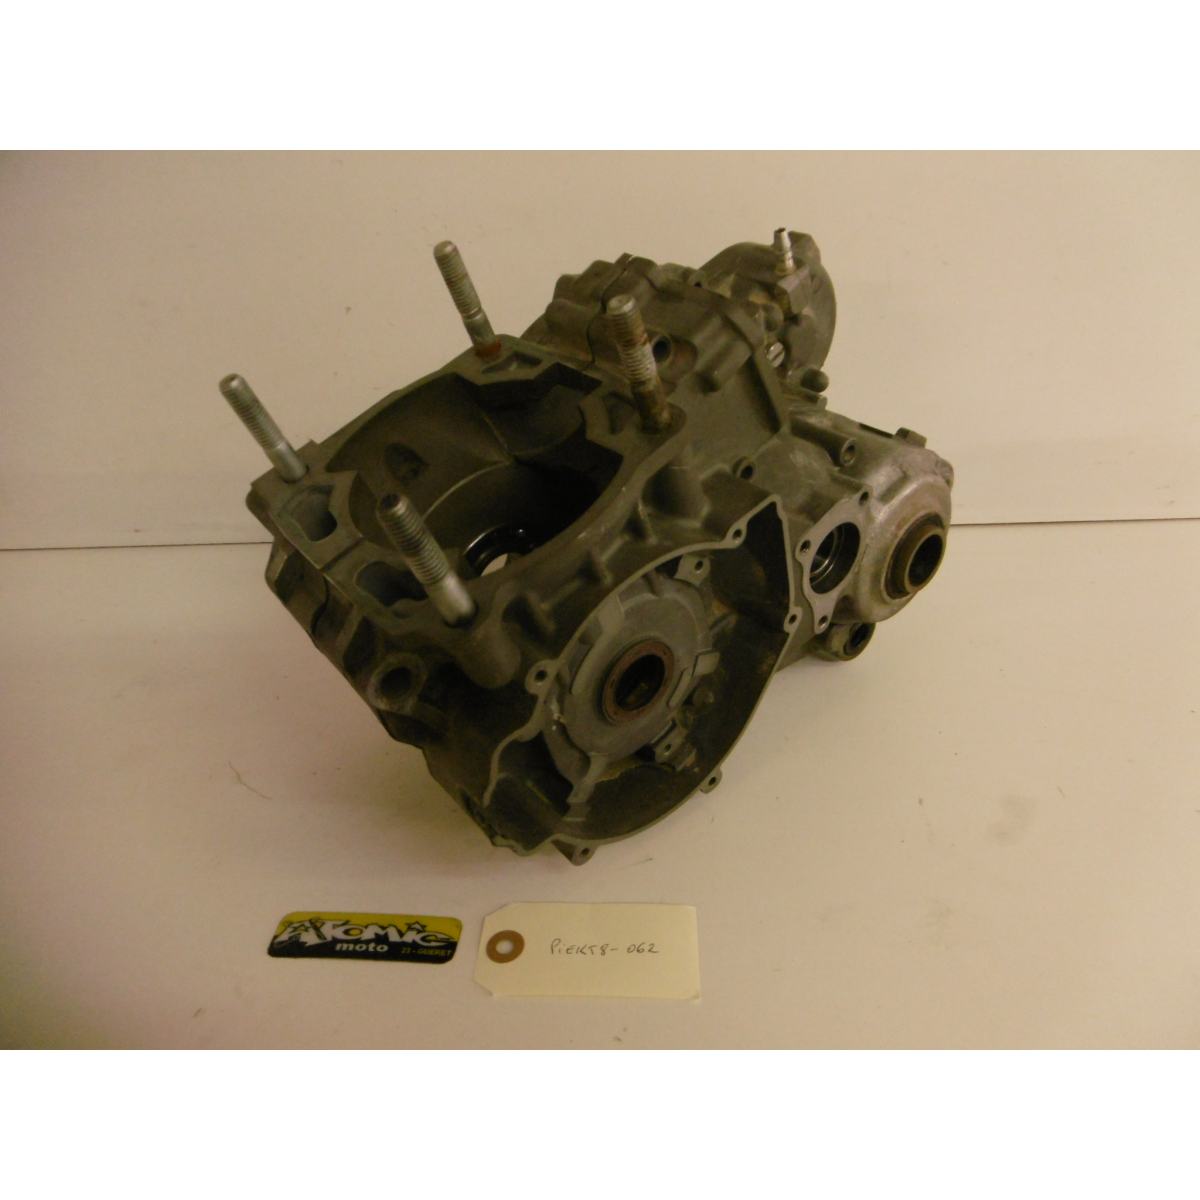 Carters moteur centraux KTM 250 EXC 2003